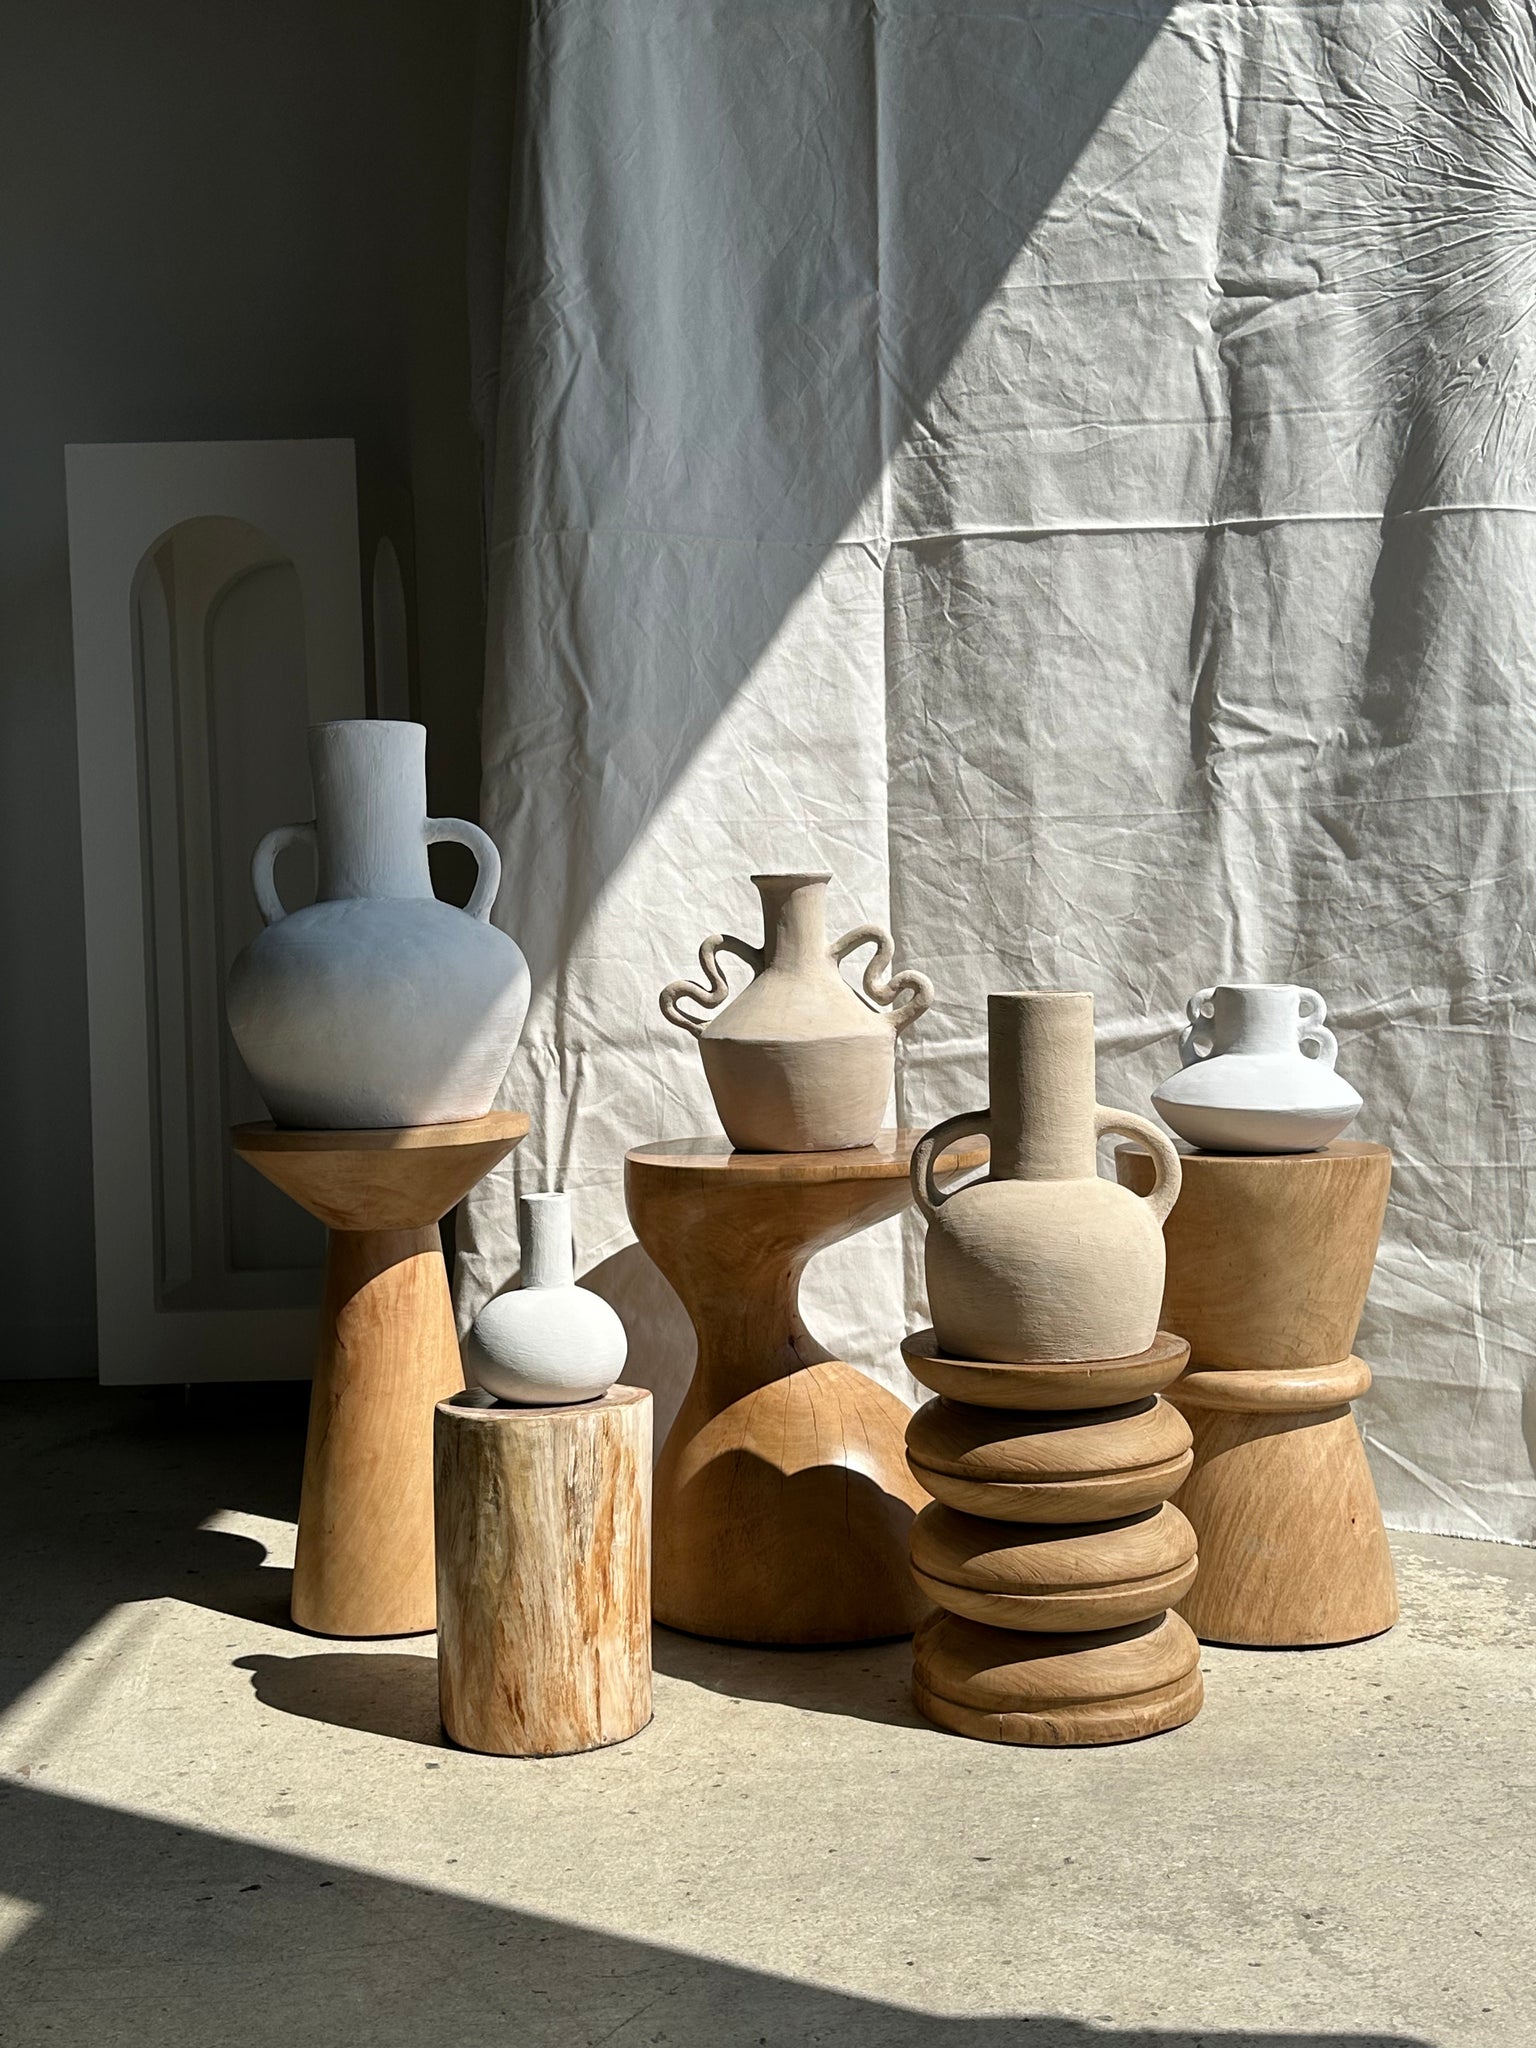 Vase artisanal en terracotta peint en beige à double anses H:32cm D:25cm